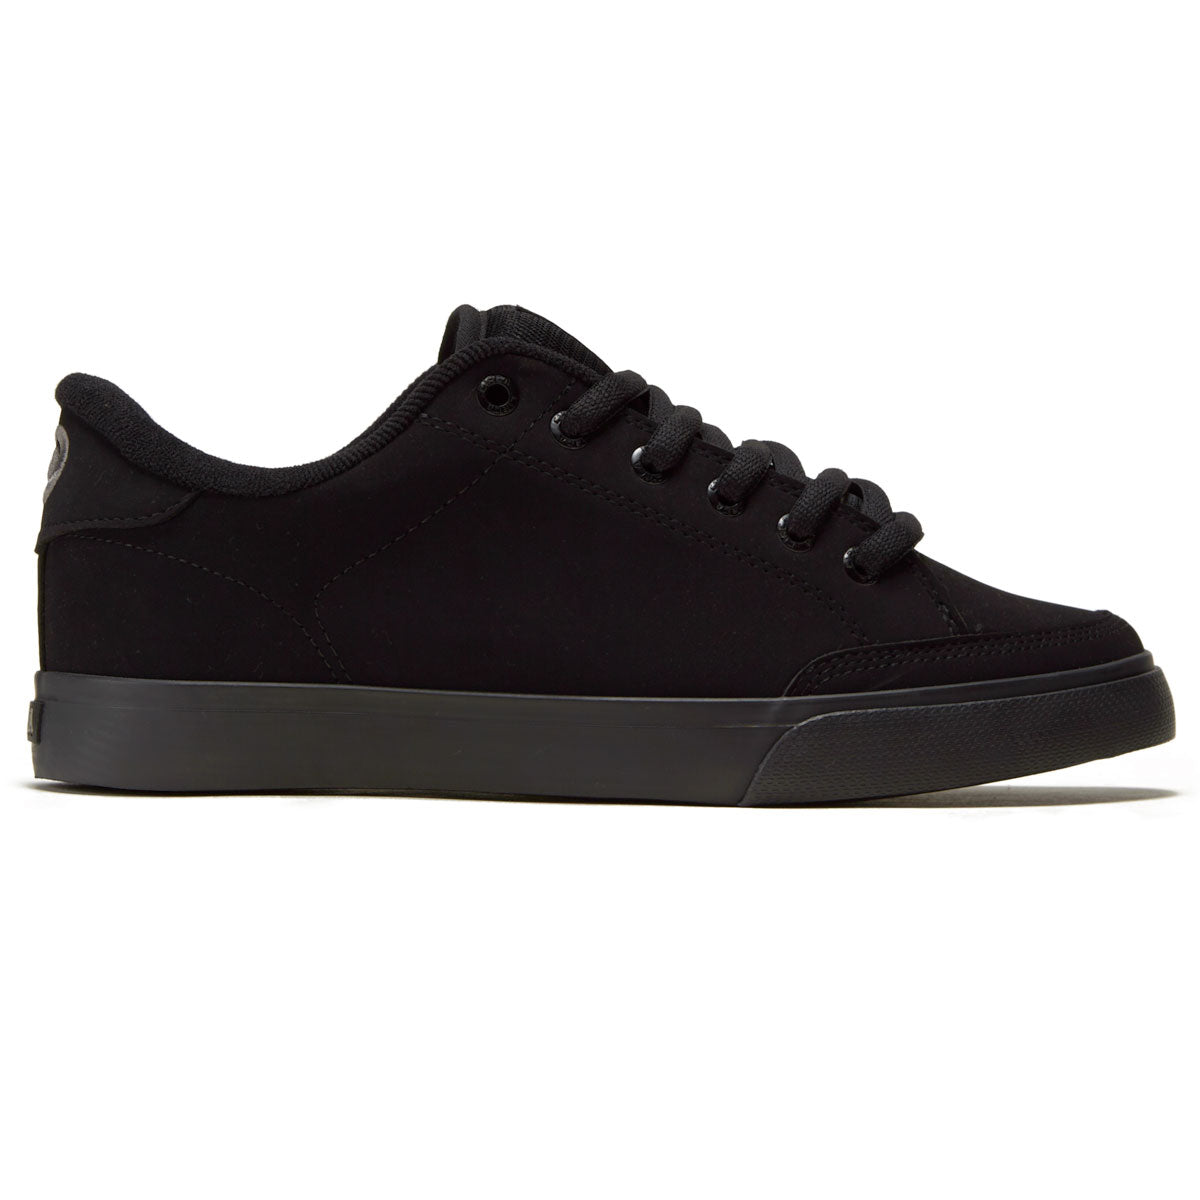 C1rca AL50 Shoes - Black/Black/Synthetic image 1